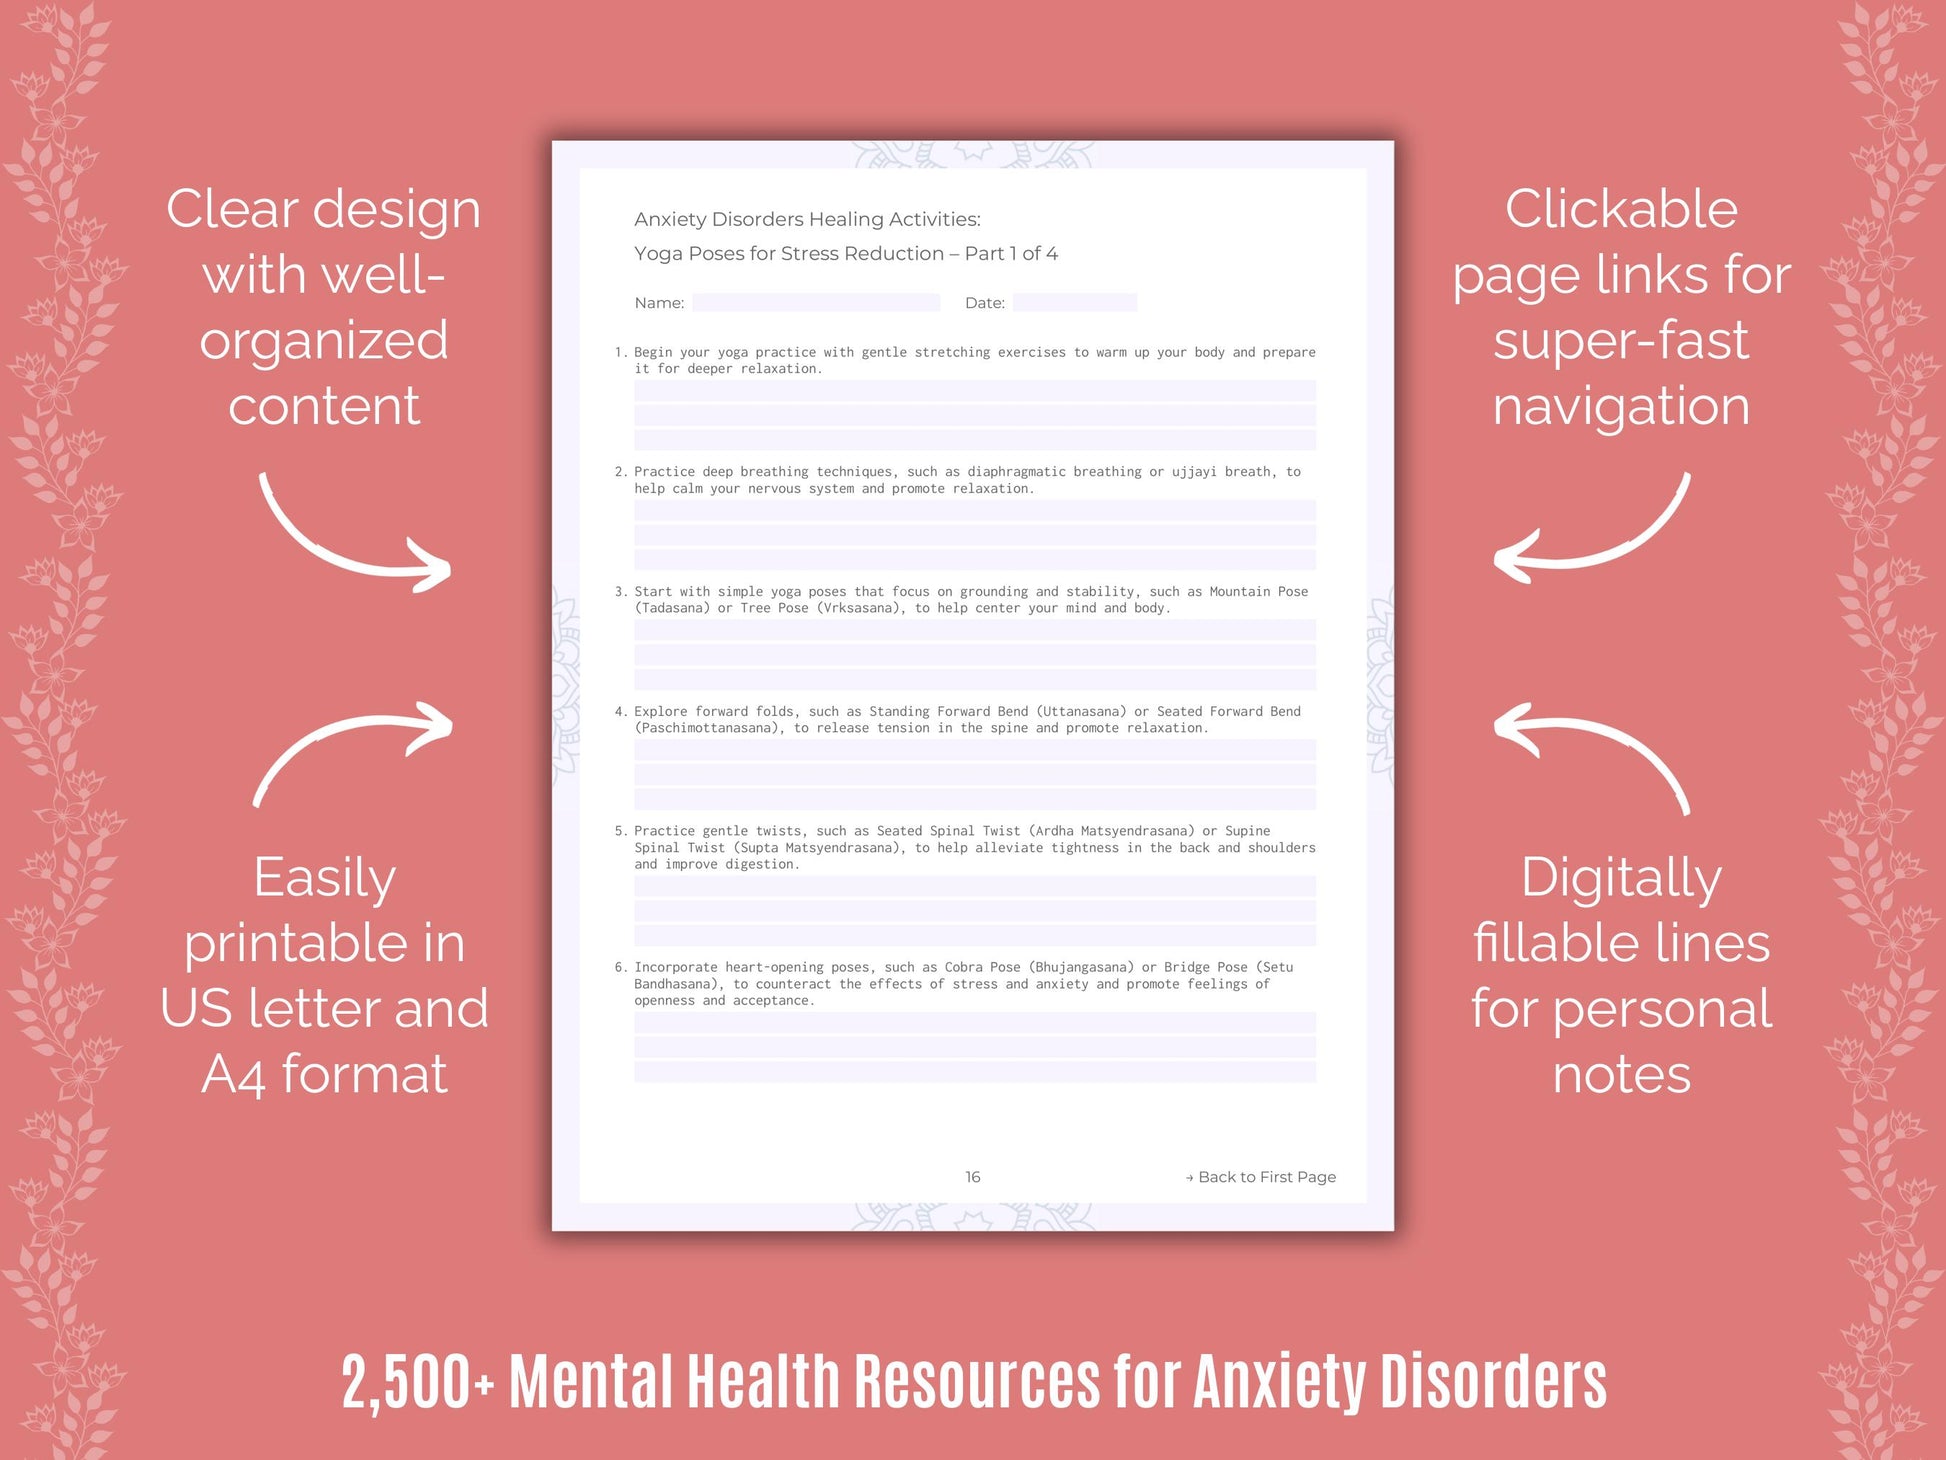 Mental Health Strategies Worksheets